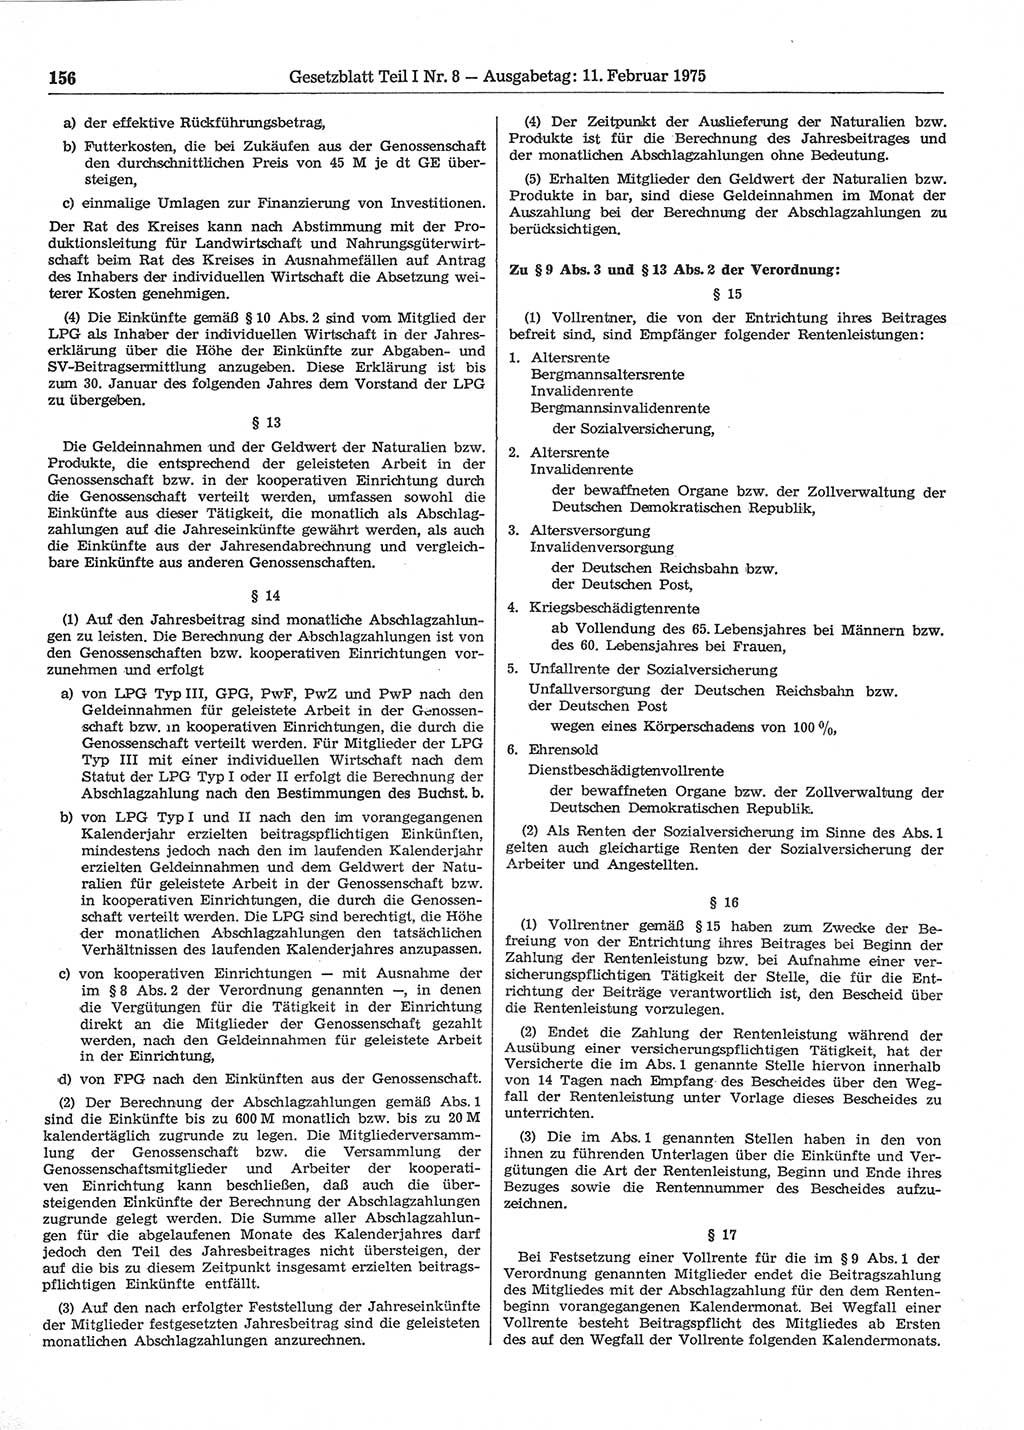 Gesetzblatt (GBl.) der Deutschen Demokratischen Republik (DDR) Teil Ⅰ 1975, Seite 156 (GBl. DDR Ⅰ 1975, S. 156)